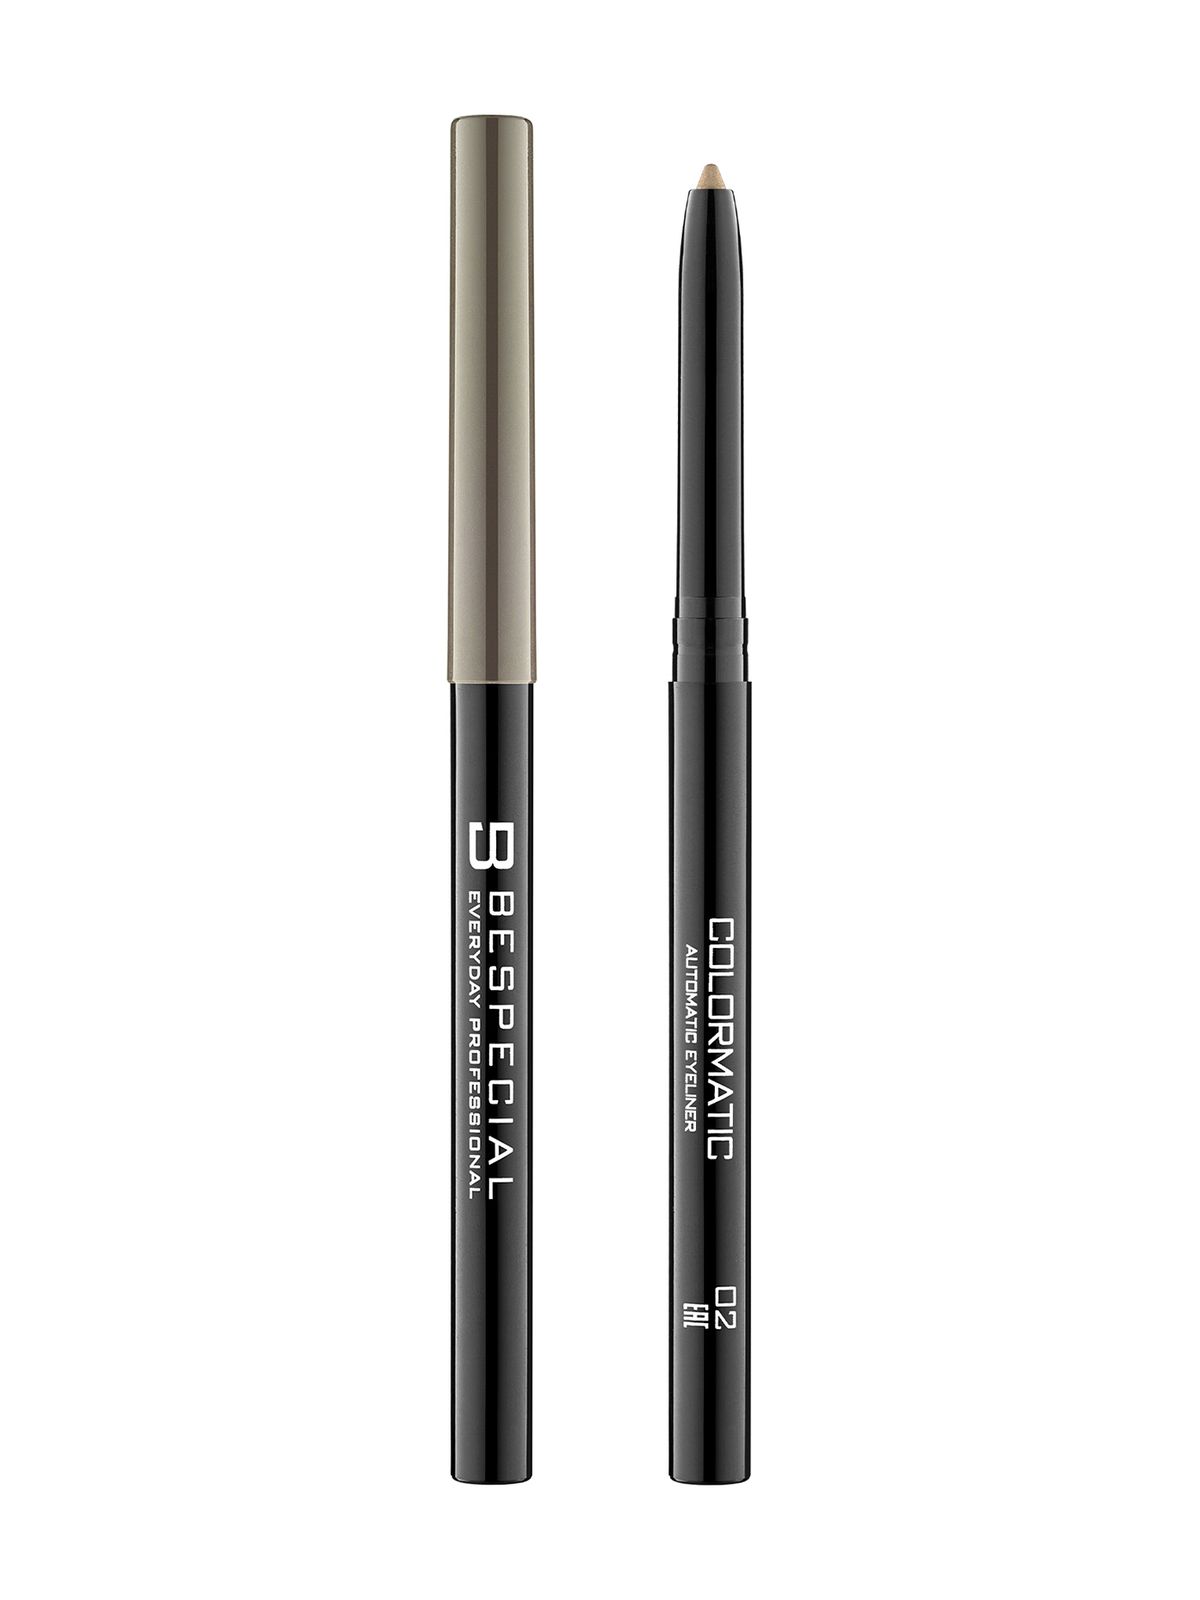 Механический карандаш для глаз Bespecial Colormatic Eye Pencil bellezzetta карандаш каял для глаз устойчивый гелевый контурный